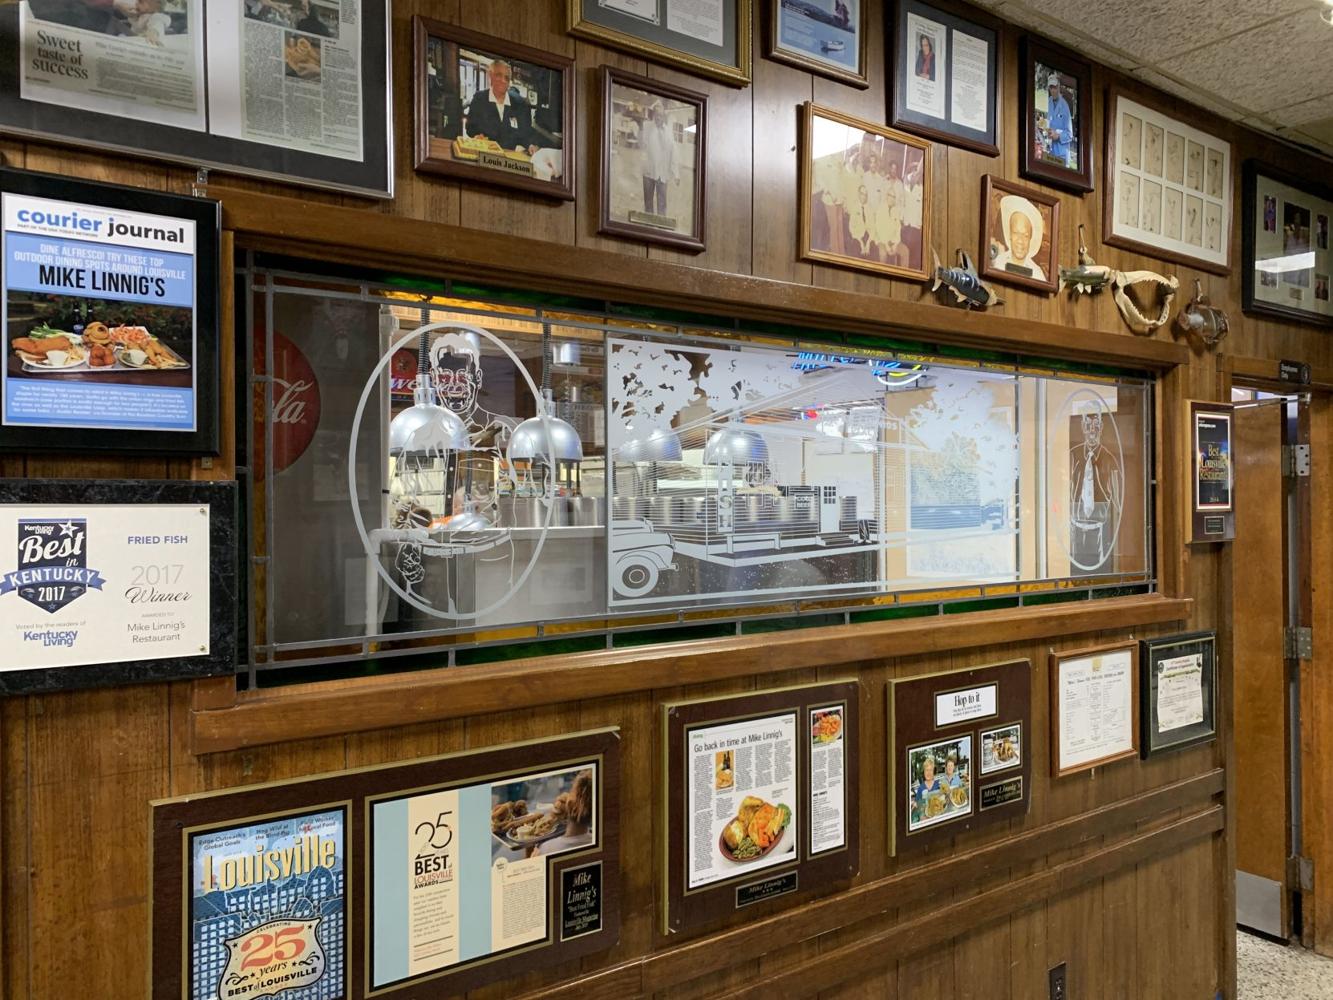 Mike Linnig's Restaurant preparing for 99th season, reopens on Thursday